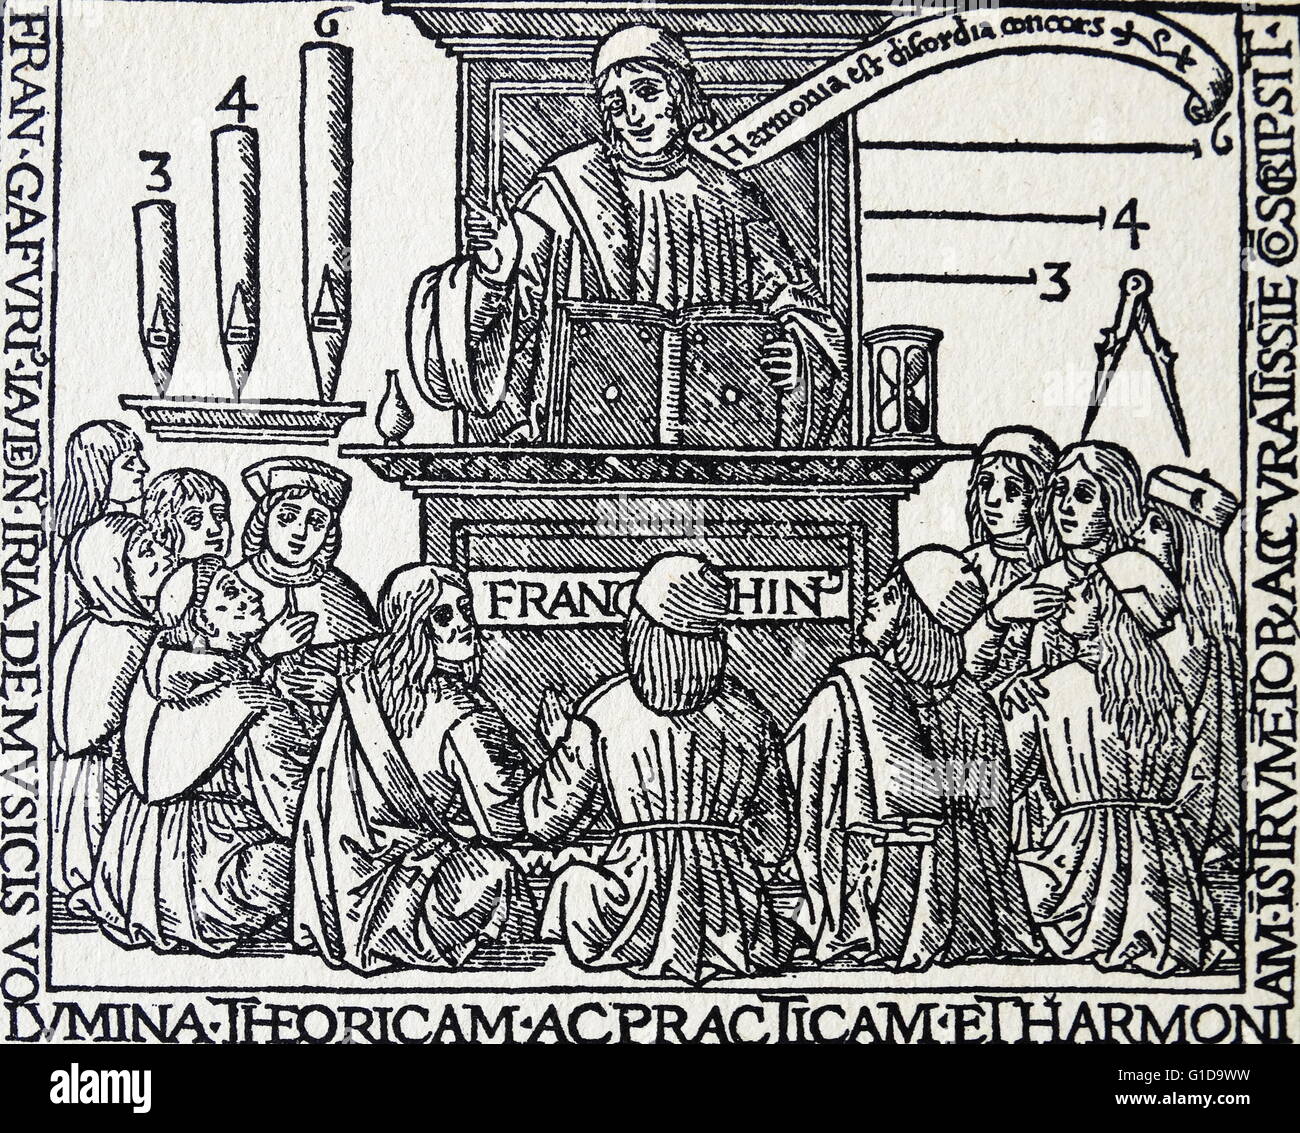 De Harmonia musicorum instrumentorum ; Franchinus Gaffurius parmi douze chercheurs de la musique. 1496. Franchinus Gaffurius (Franchino Gaffurio ; Janvier 14, 1451 - Juin 25, 1522) était un théoricien de la musique et compositeur de la Renaissance Banque D'Images